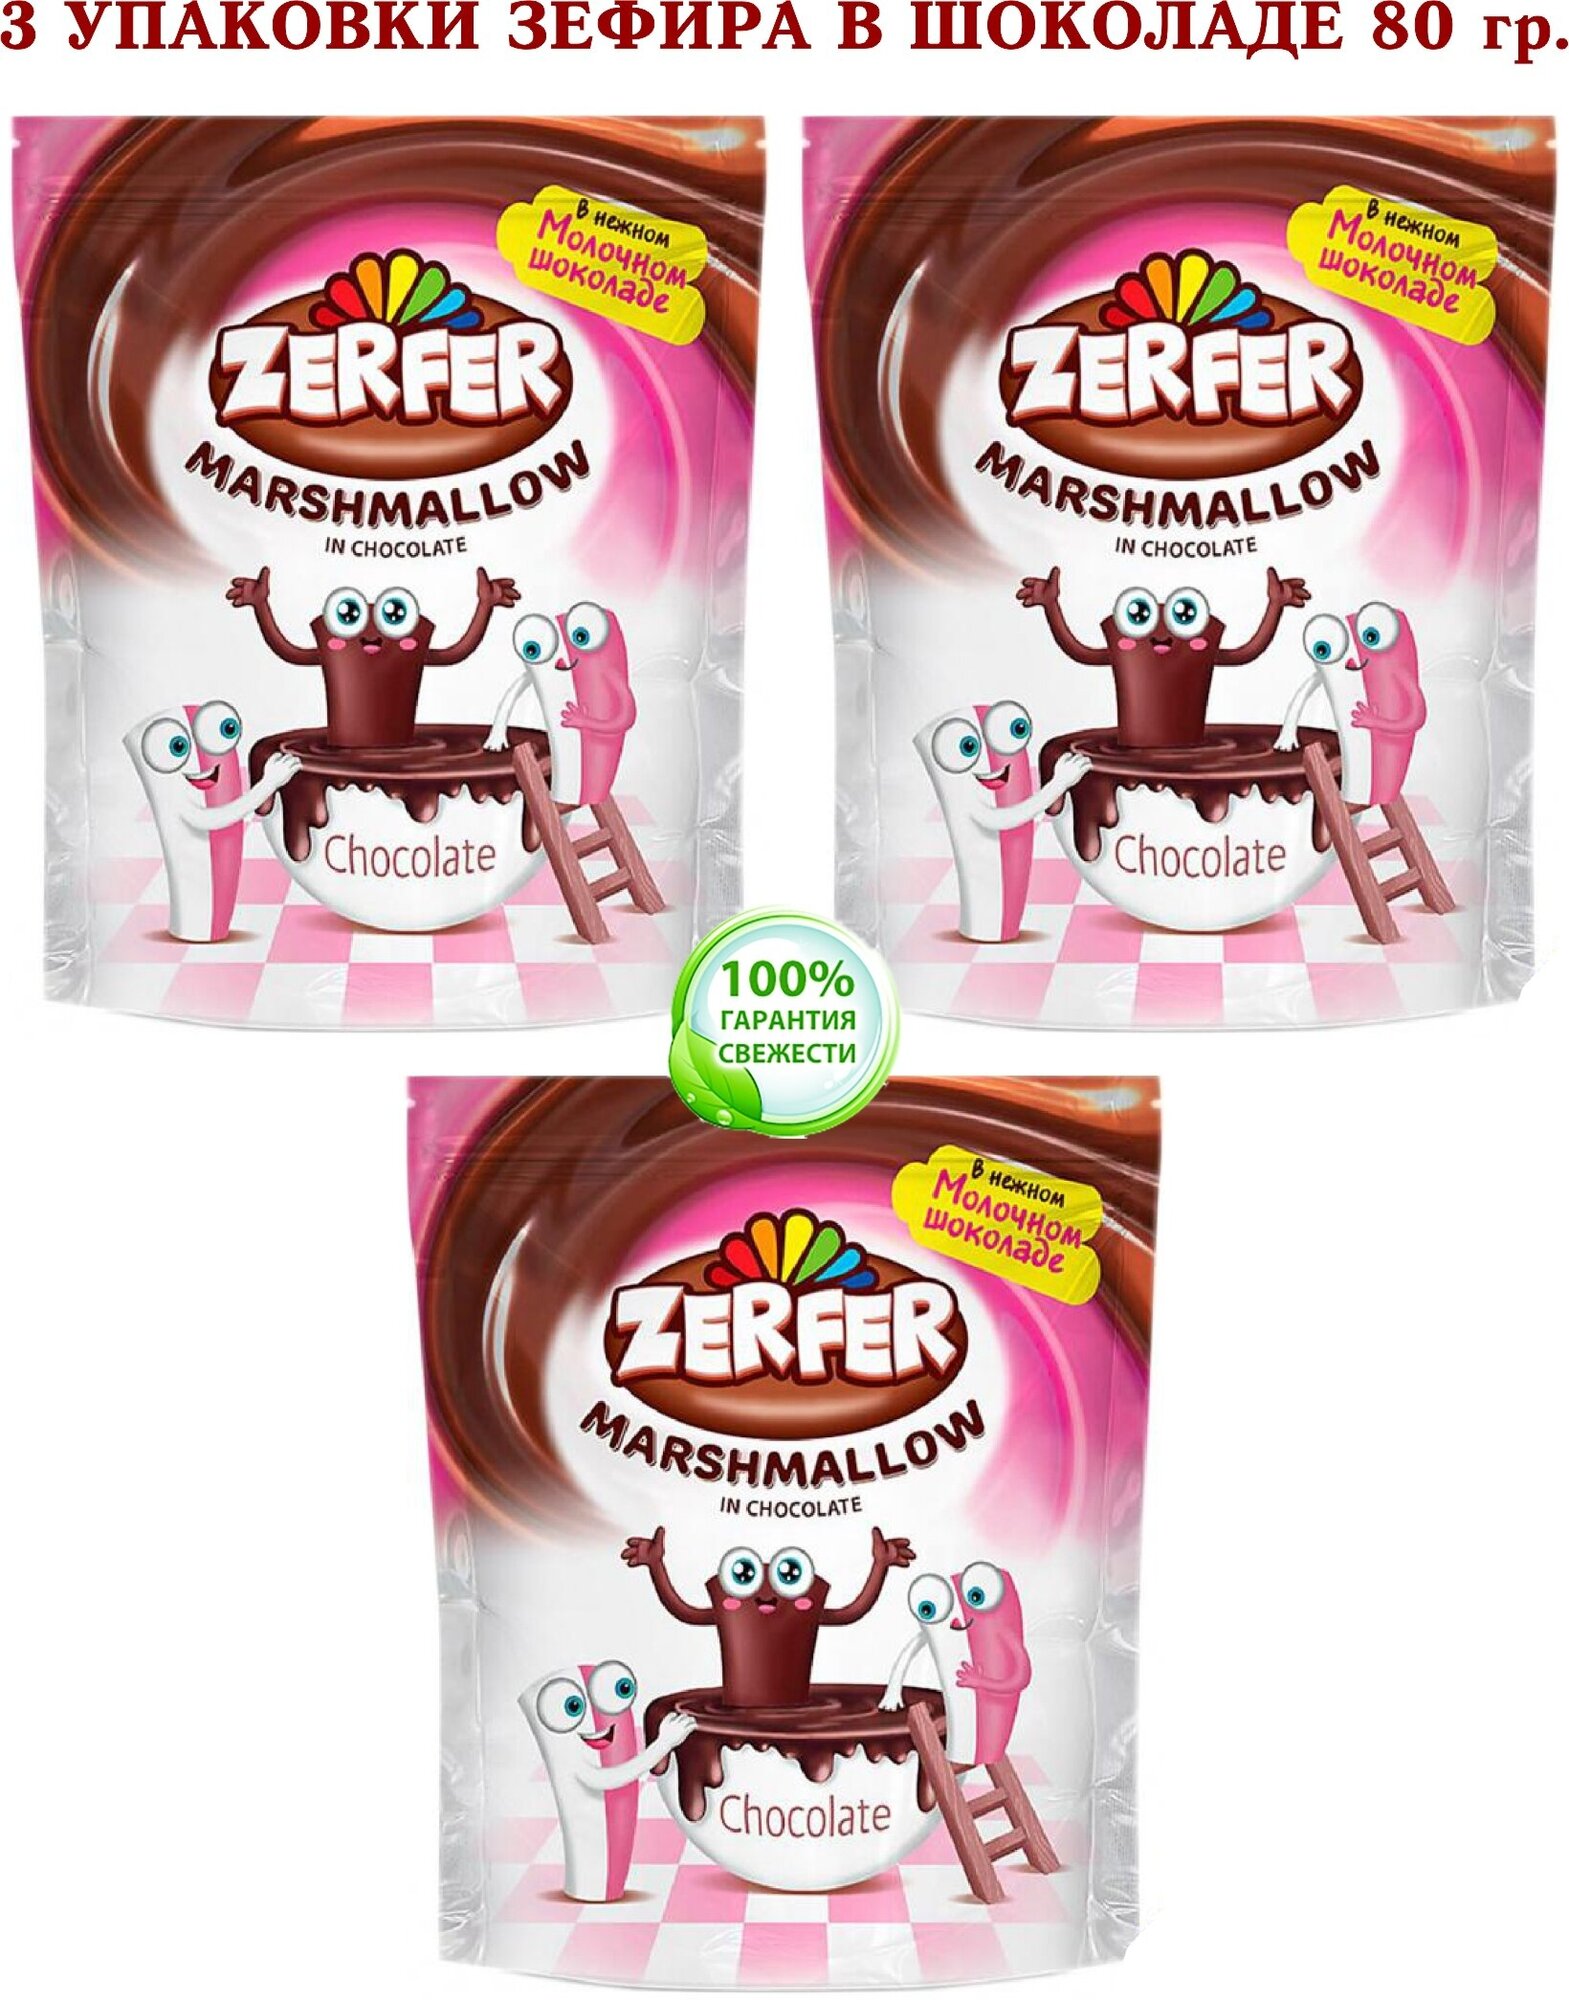 Маршмеллоу ZERFER - зефир клубнично-сливочный в молочном шоколаде - 3 упаковки по 80 грамм